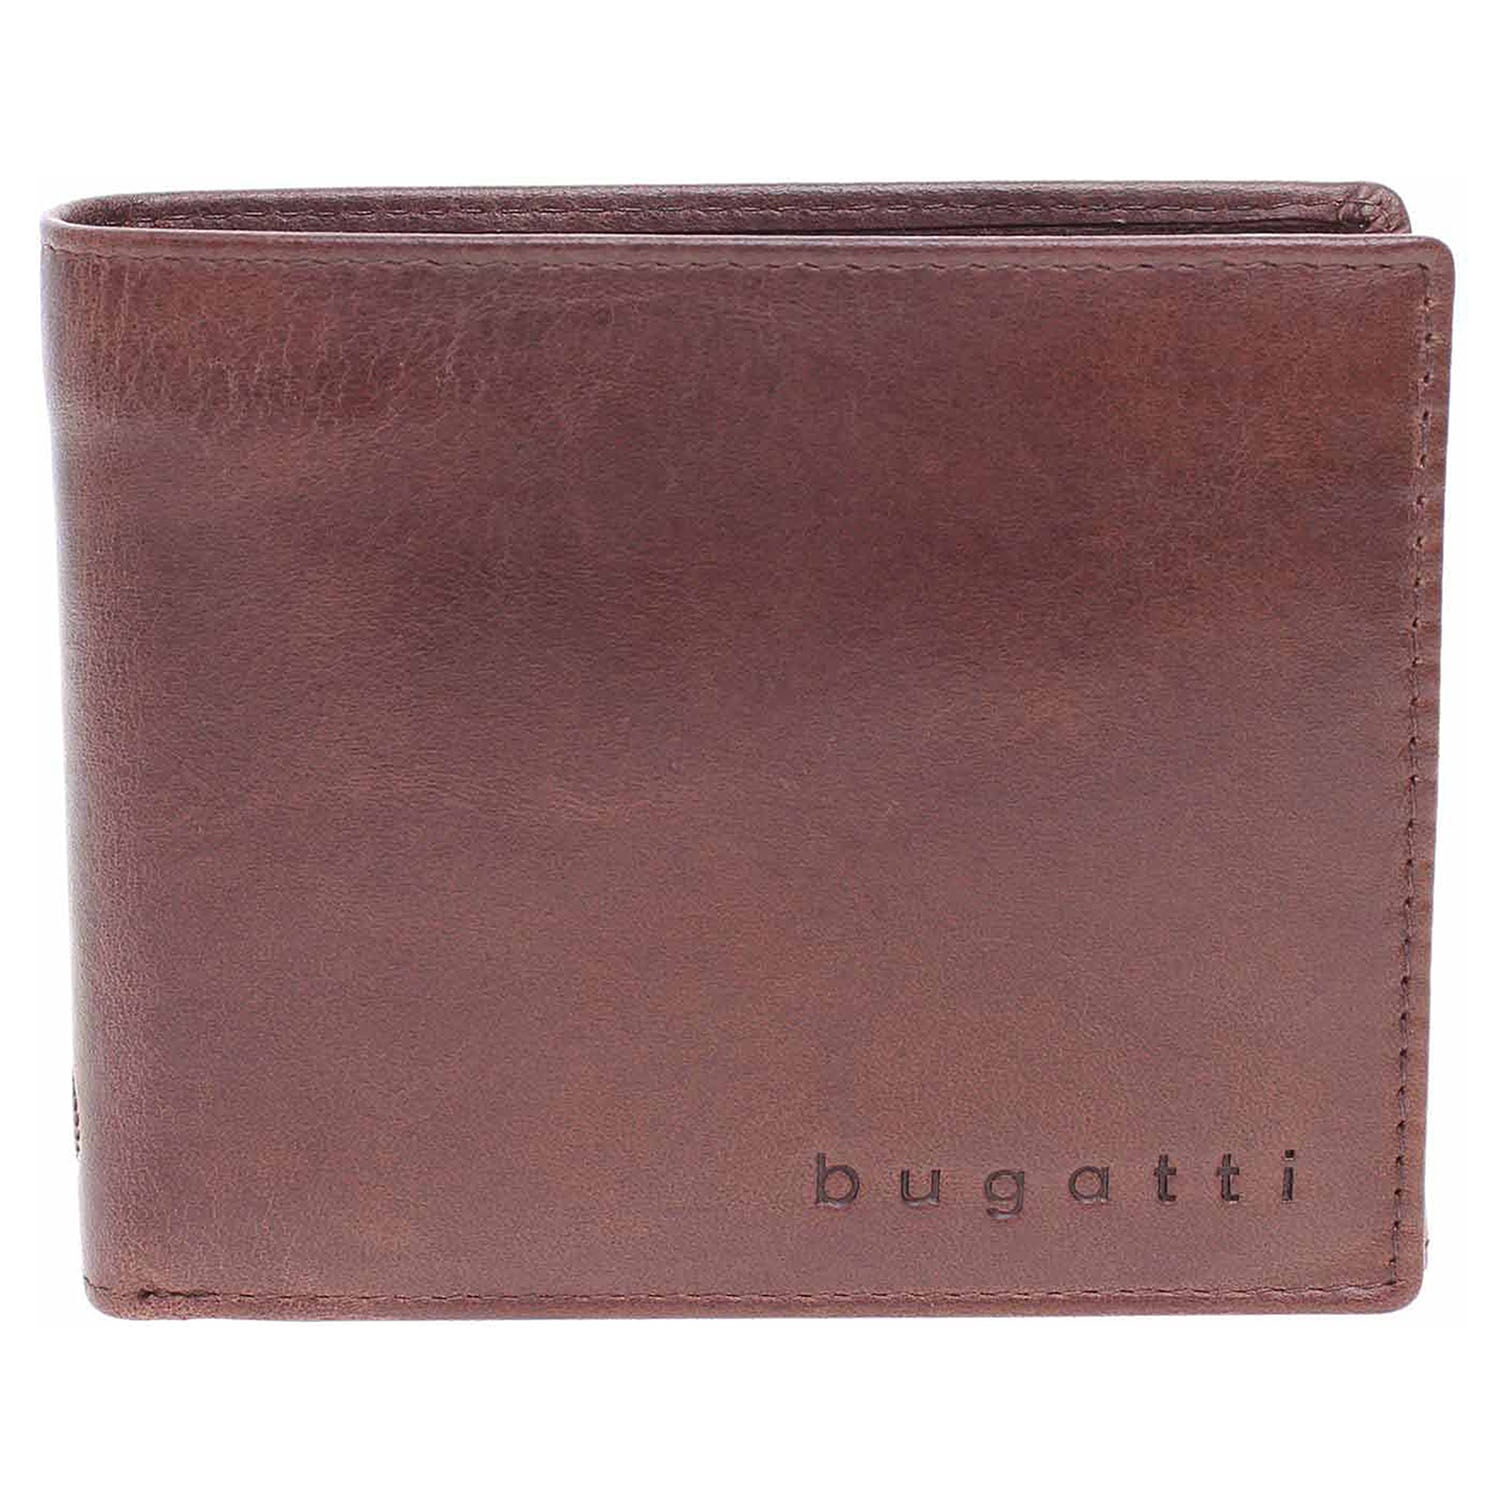 Bugatti pánská peněženka 49217702 braun 1